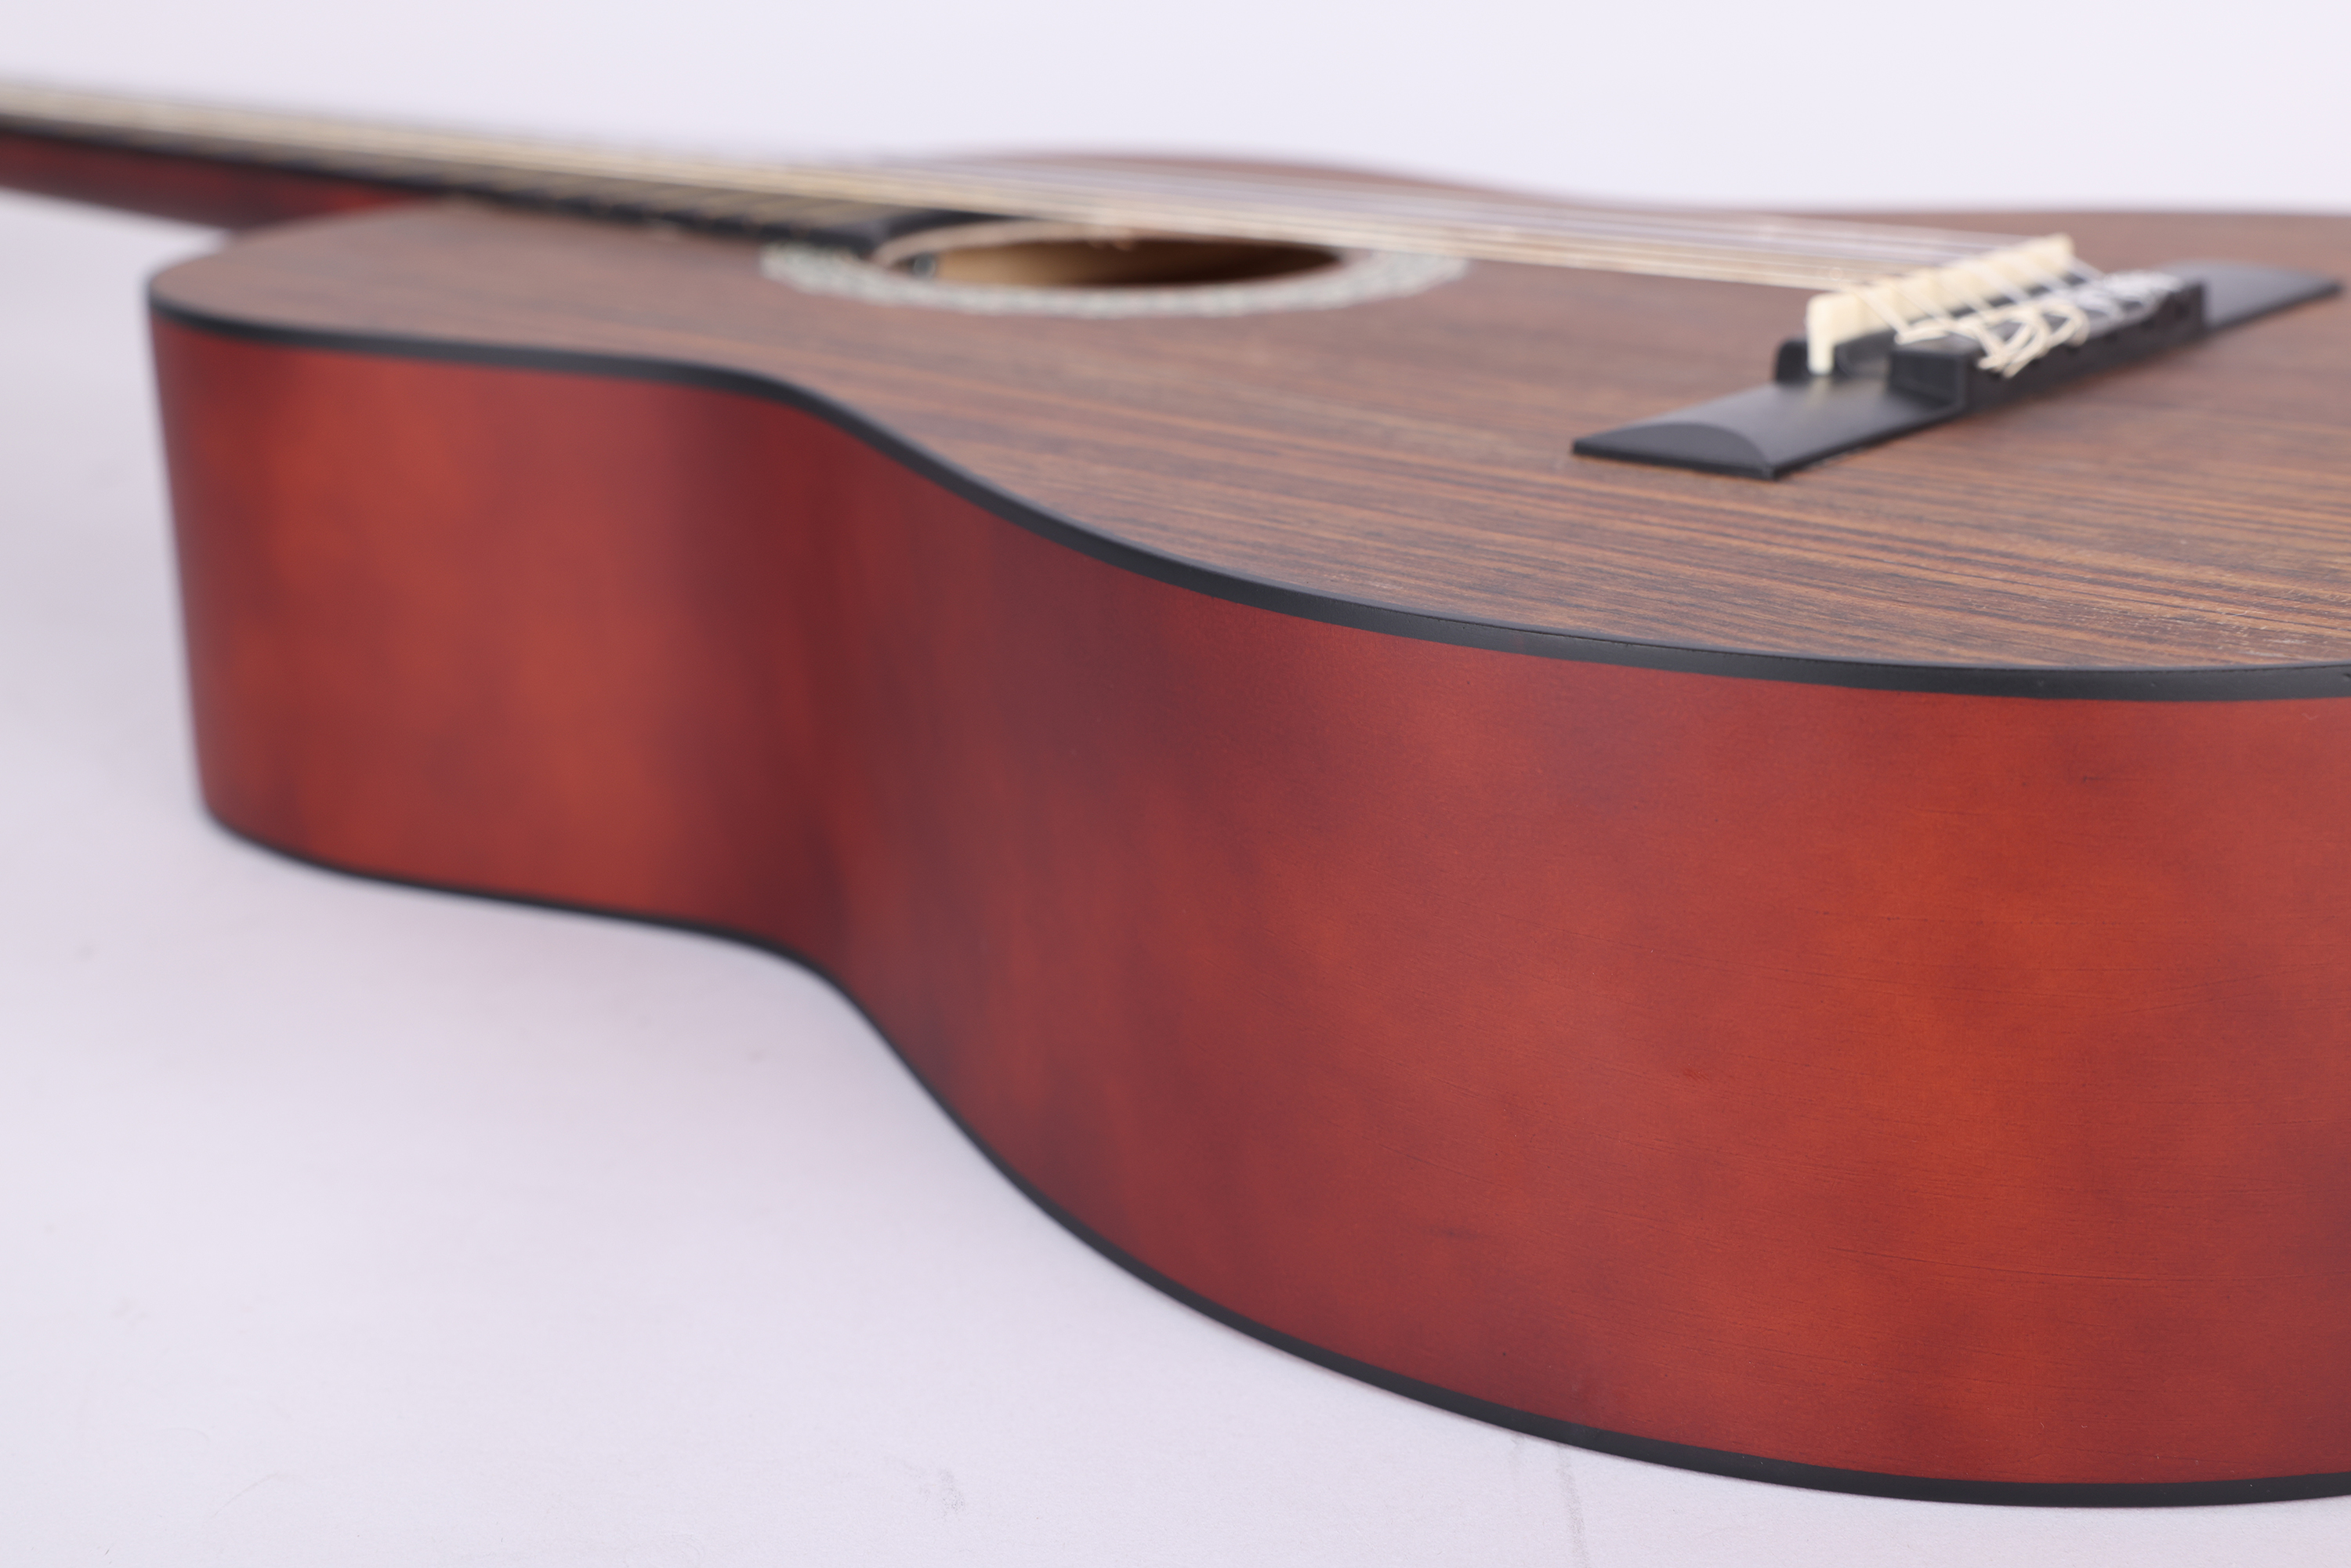 Дешевые полноразмерные классические гитары из орехового дерева, 30-39 дюймов, матовая отделка (AC008L)